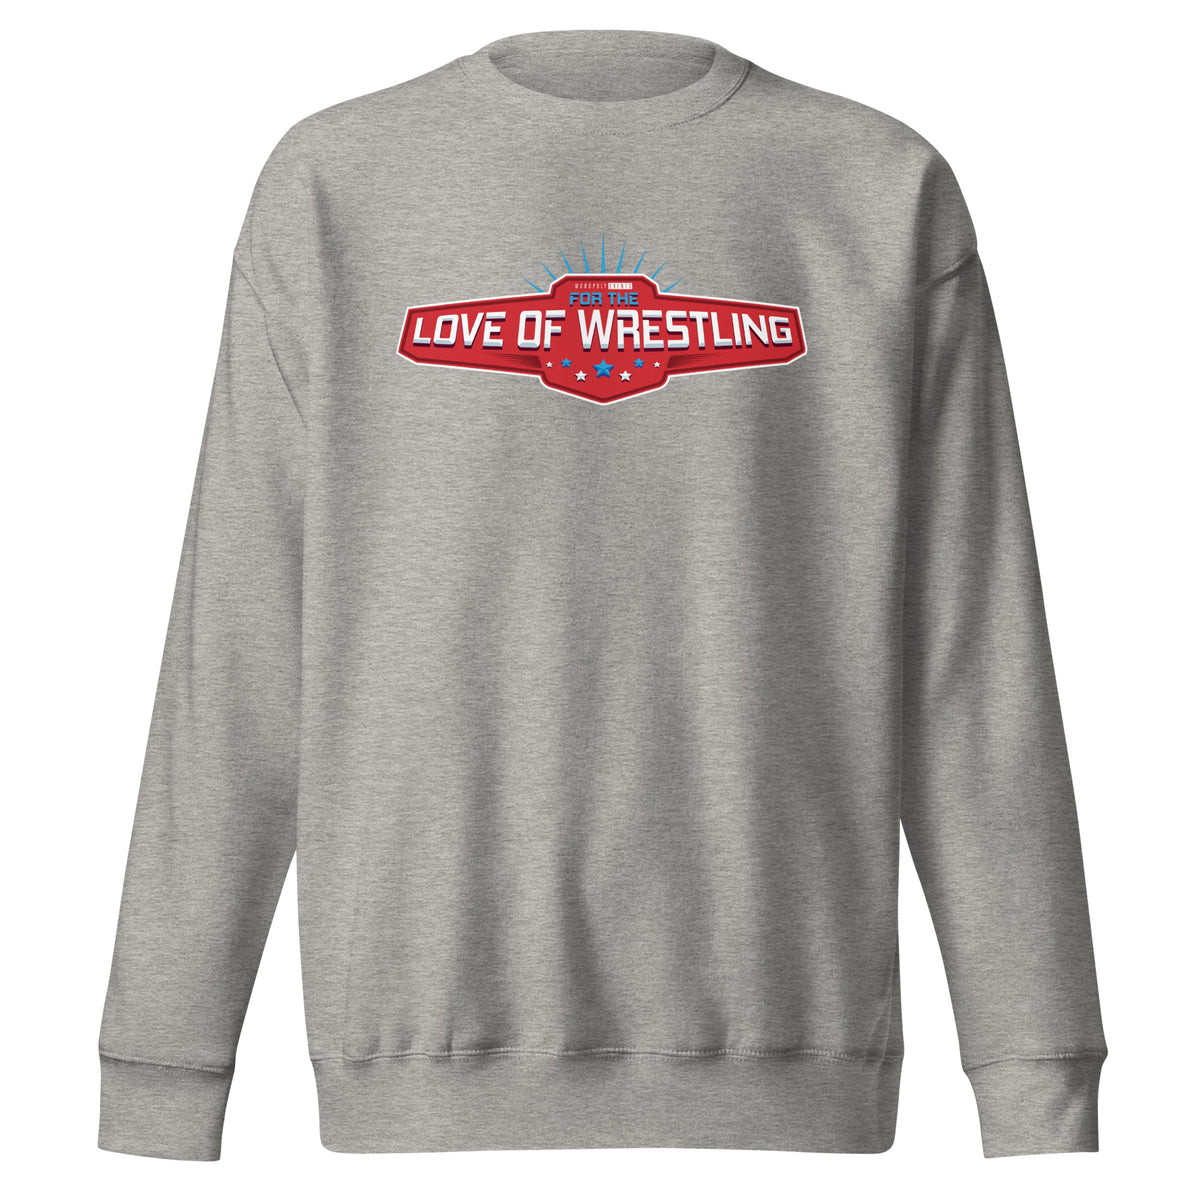 FTL Wrestling Unisex Premium Sweatshirt